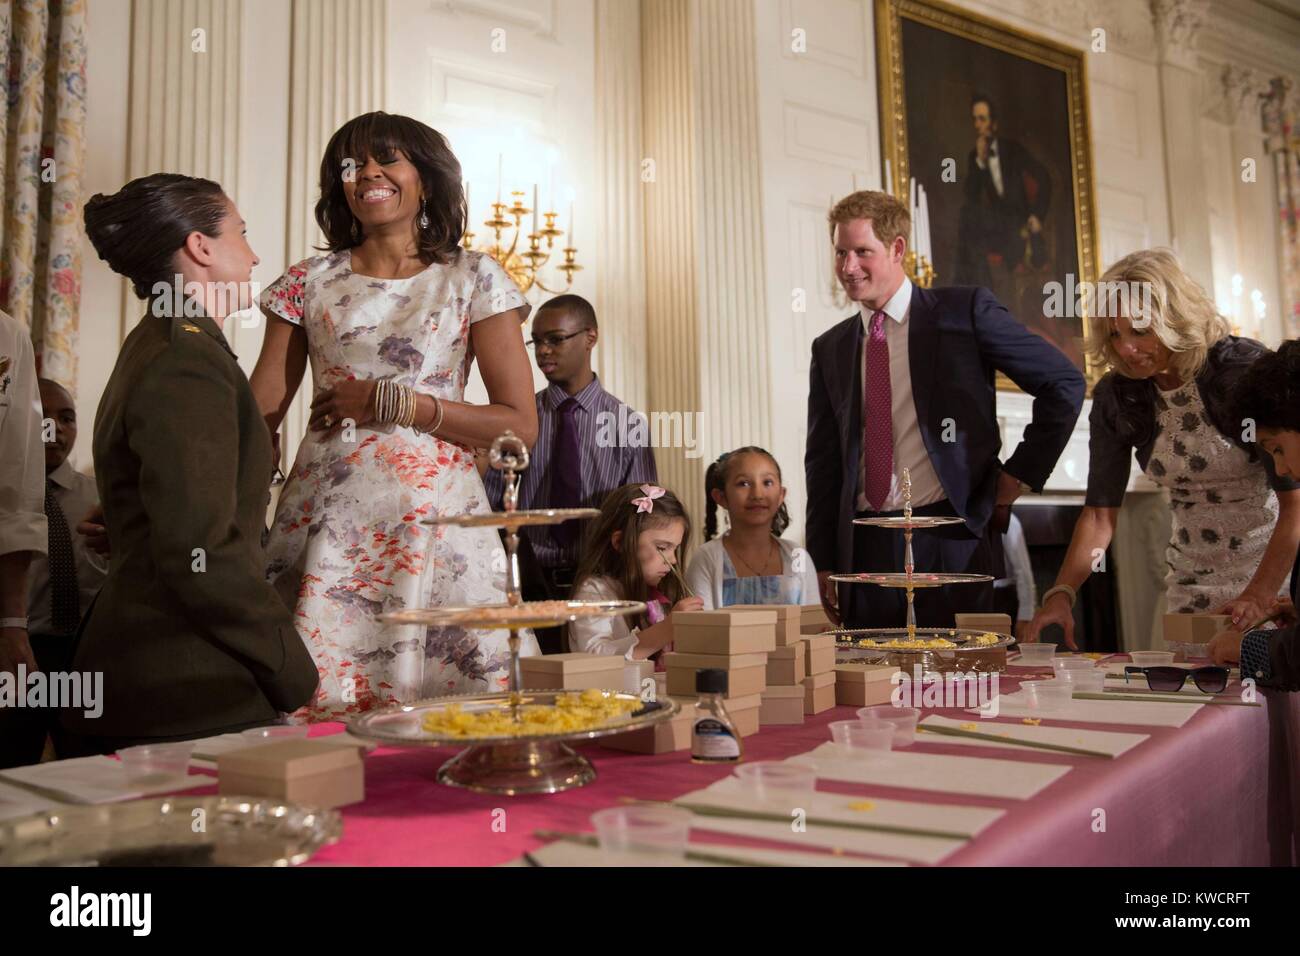 First Lady Michelle Obama, Prinz Harry von Wales, und Dr. Jill Biden im Weißen Haus. Sie helfen Kindern Muttertag Karten und anderes Kunsthandwerk als Geschenke für ihre Mütter während der Kräfte der militärischen Mutter Tag Tee erstellen. Mai 9, 2013. (BSLOC 2015 3 217) Stockfoto